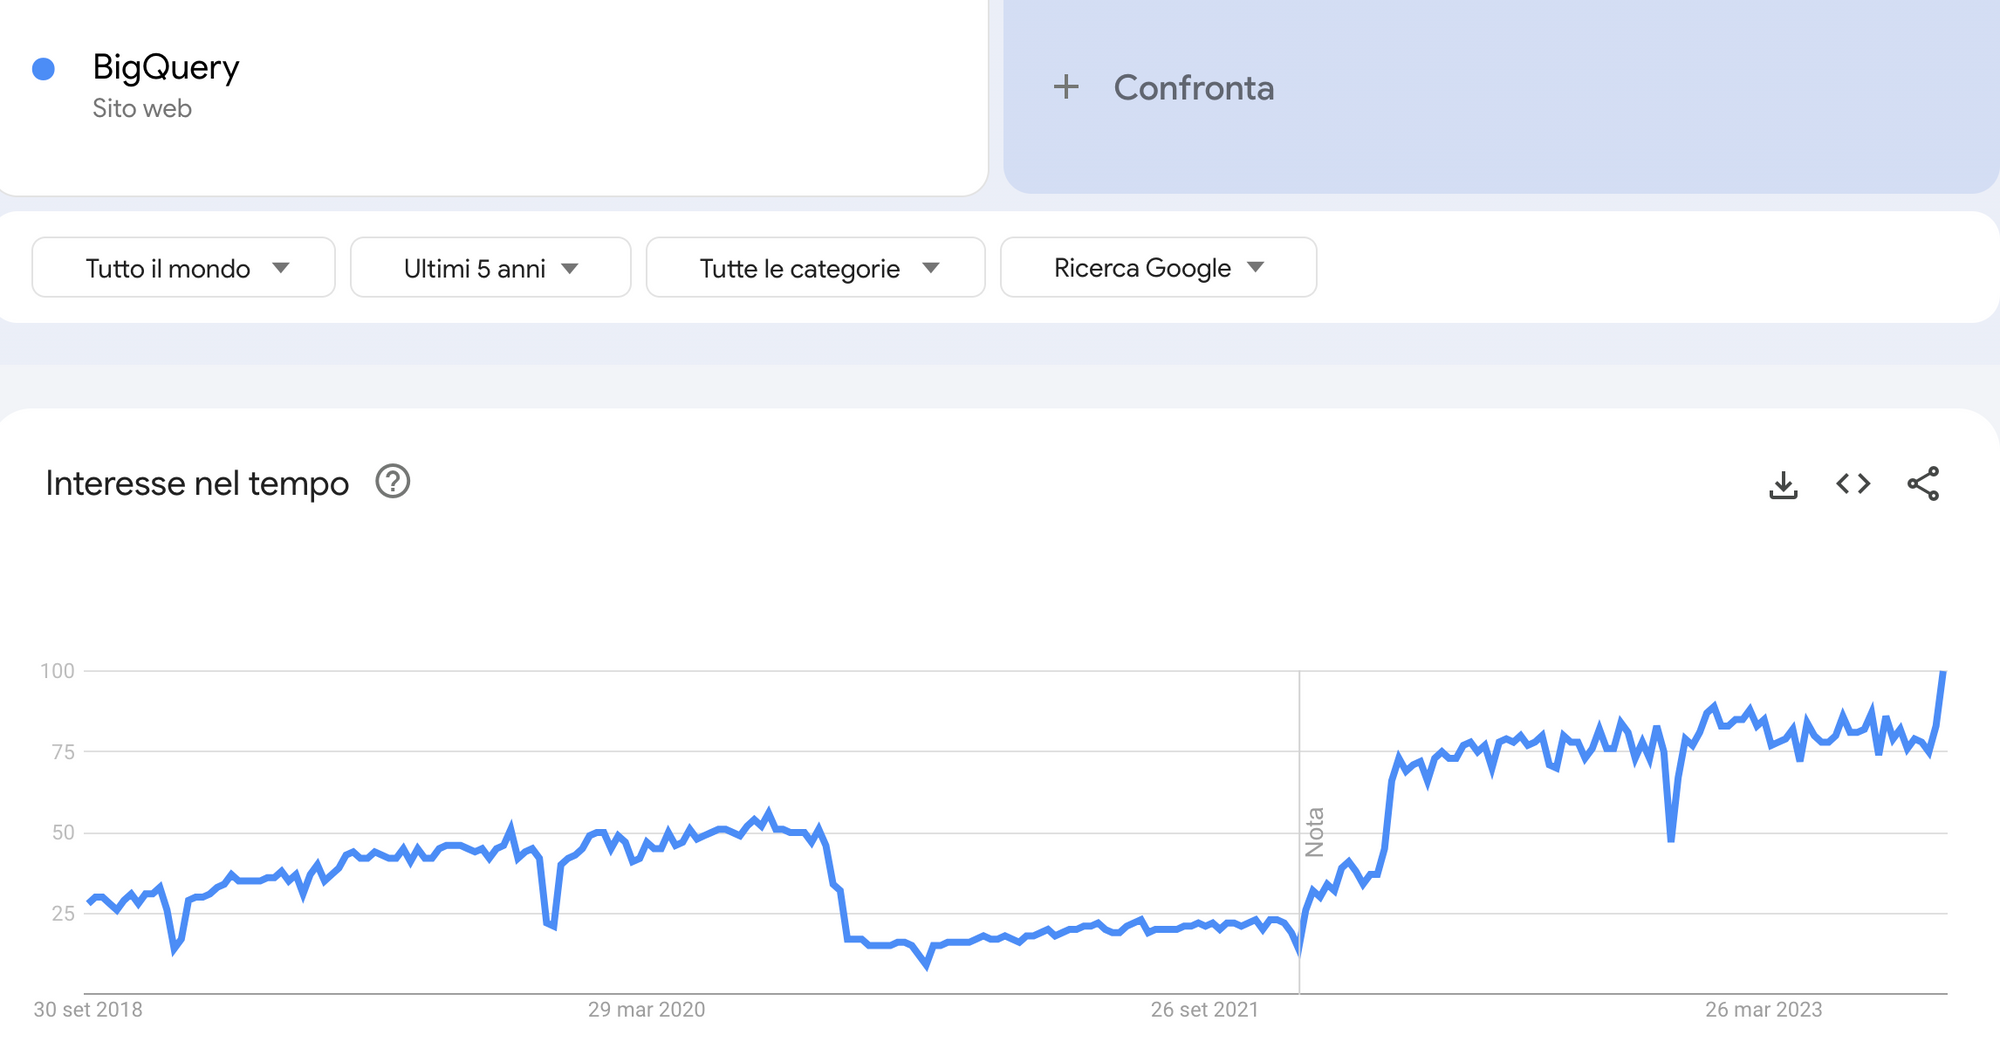 Grafico Google Trends che mostra il trend crescente per BigQuery negli ultimi 5 anni